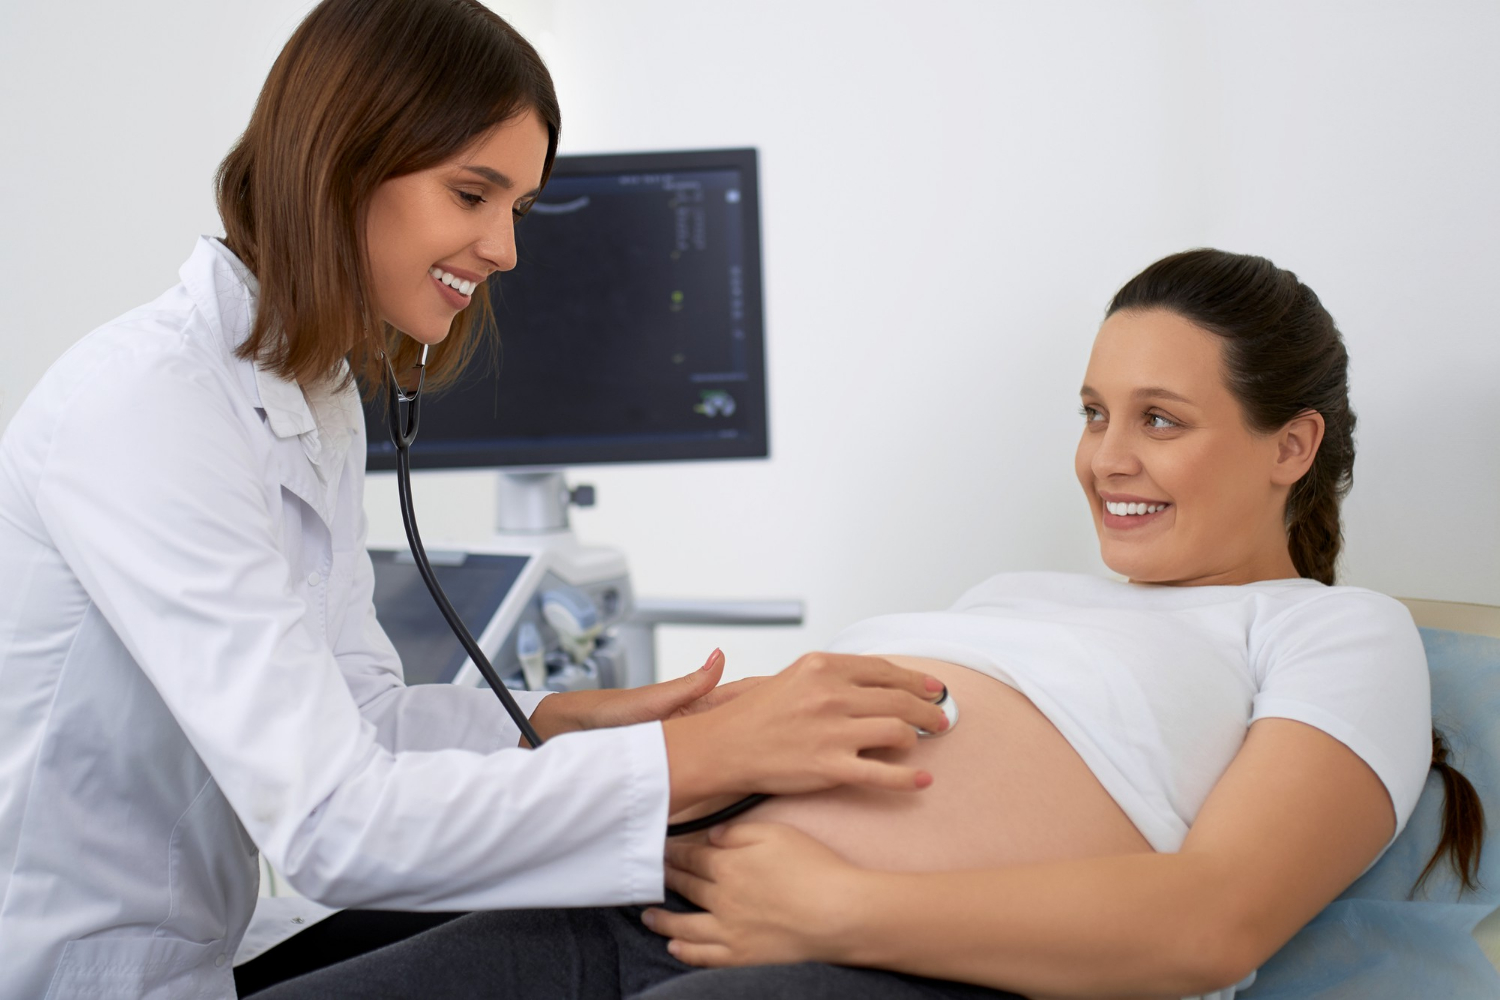 medico-estetoscopio-examinar-mujer-embarazada